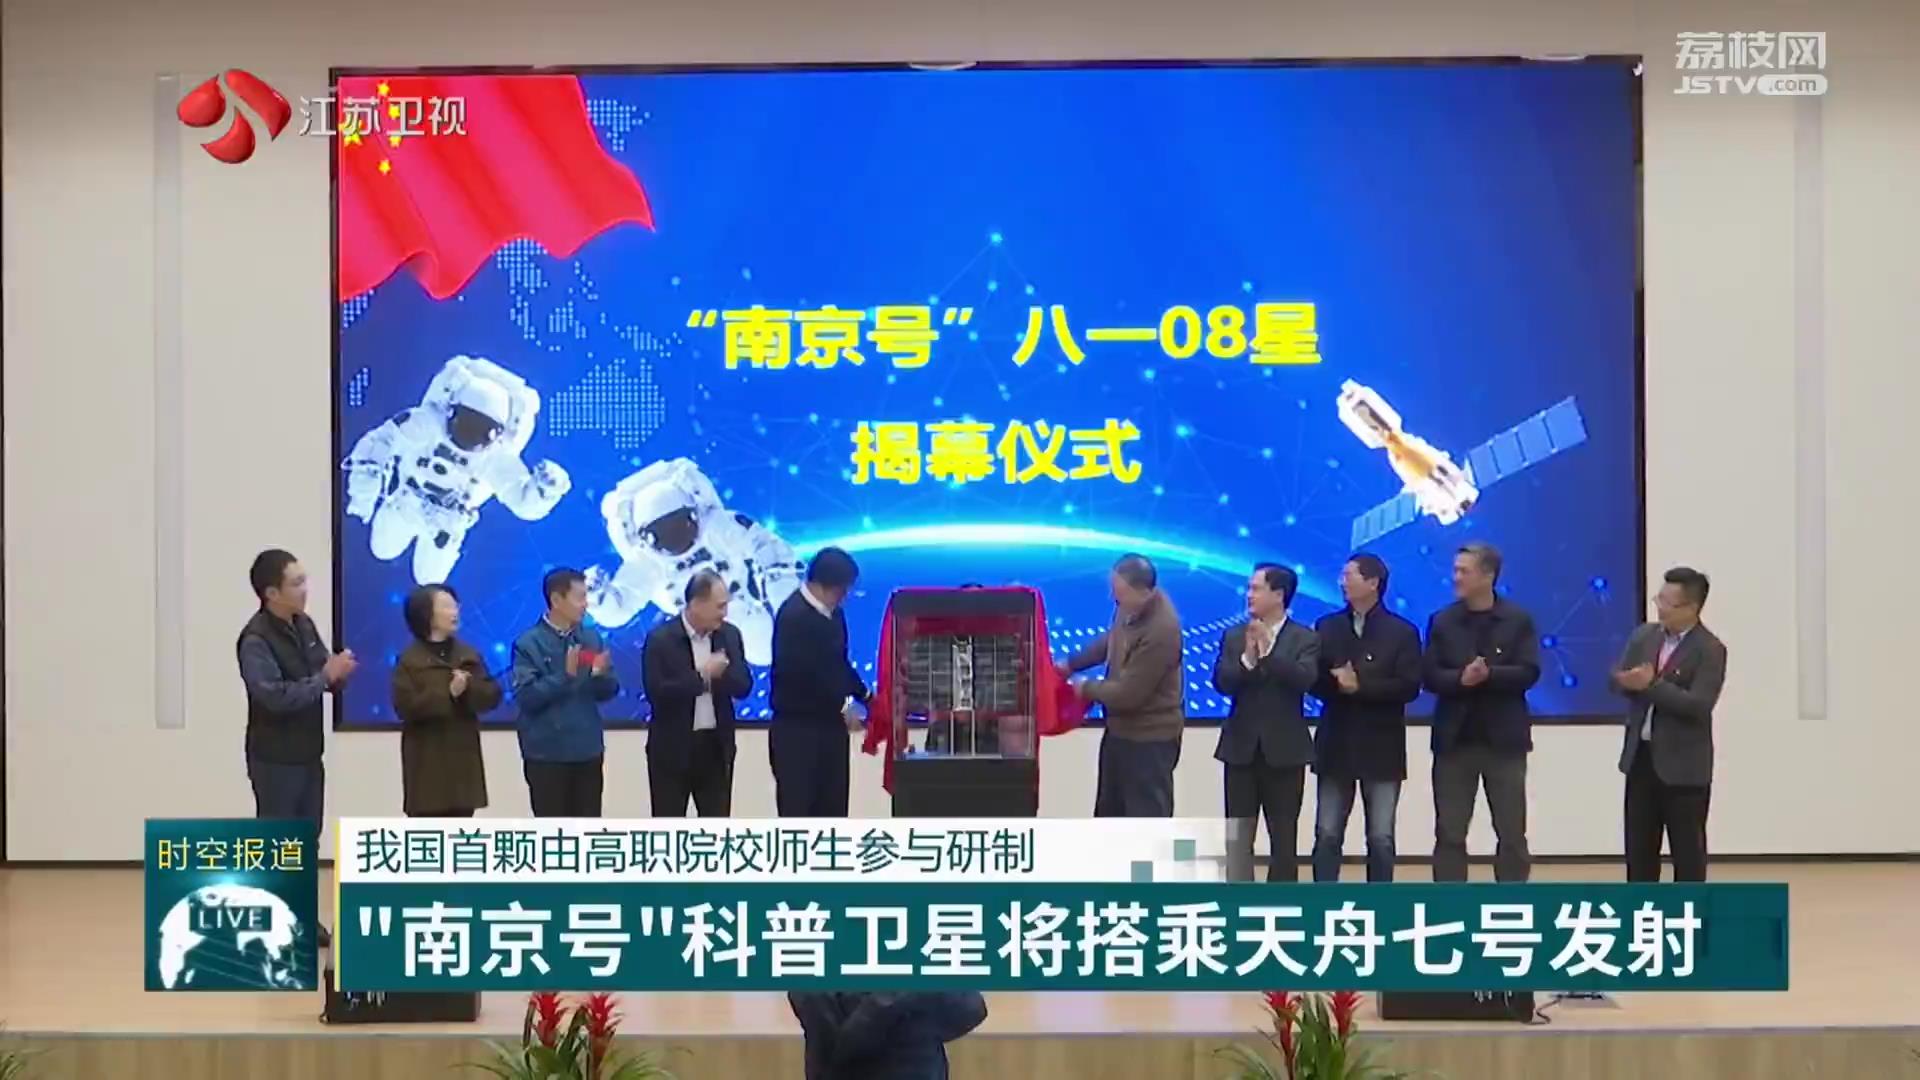 我国首颗由高职院校师生参与研制 “南京号”科普卫星将搭乘天舟七号发射